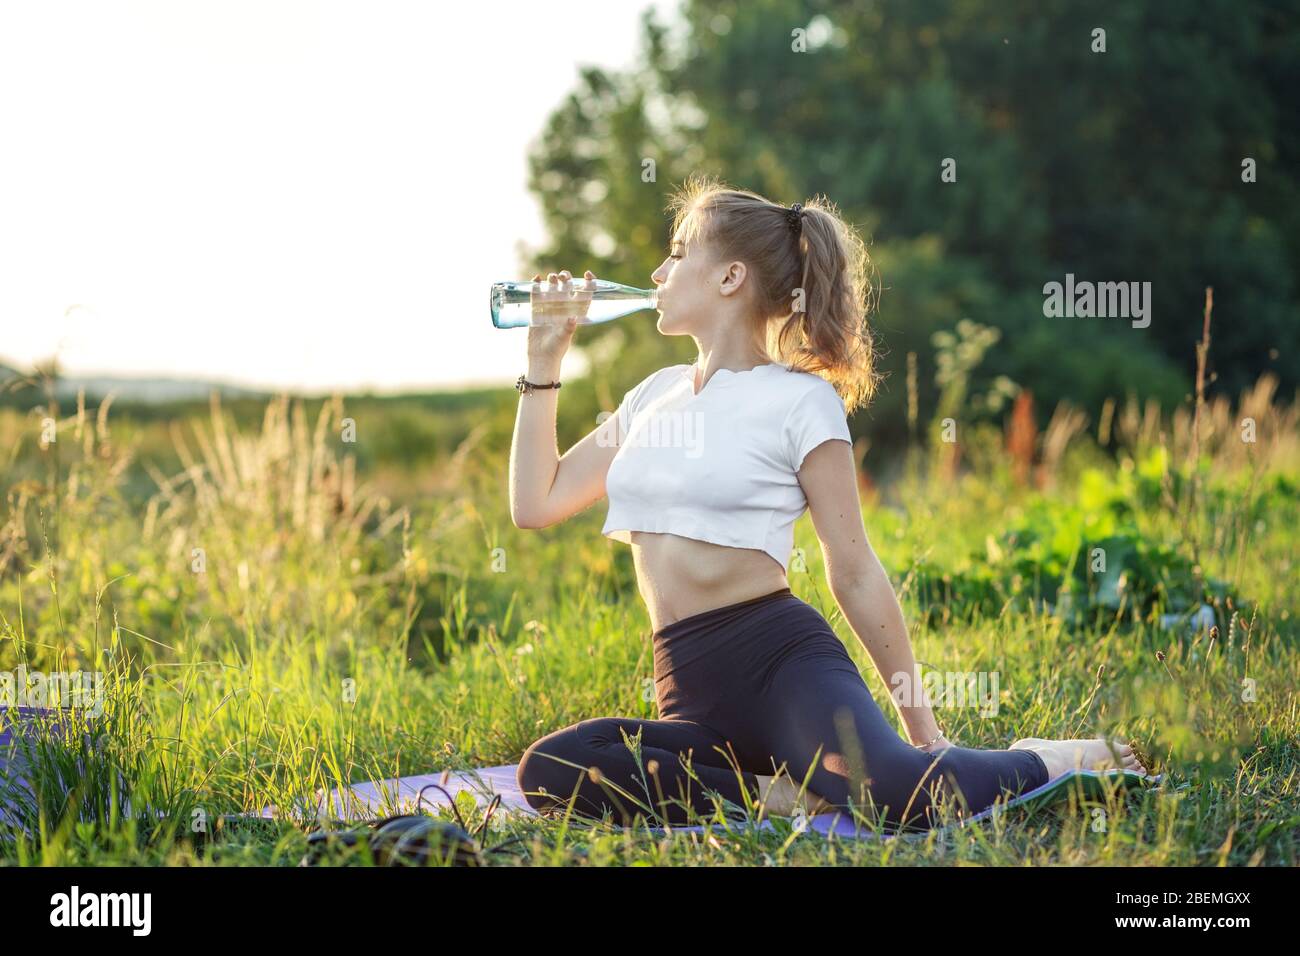 Une fille sportive boit de l'eau lors d'un entraînement. Le concept de sport, d'été et de mode de vie sain. Banque D'Images